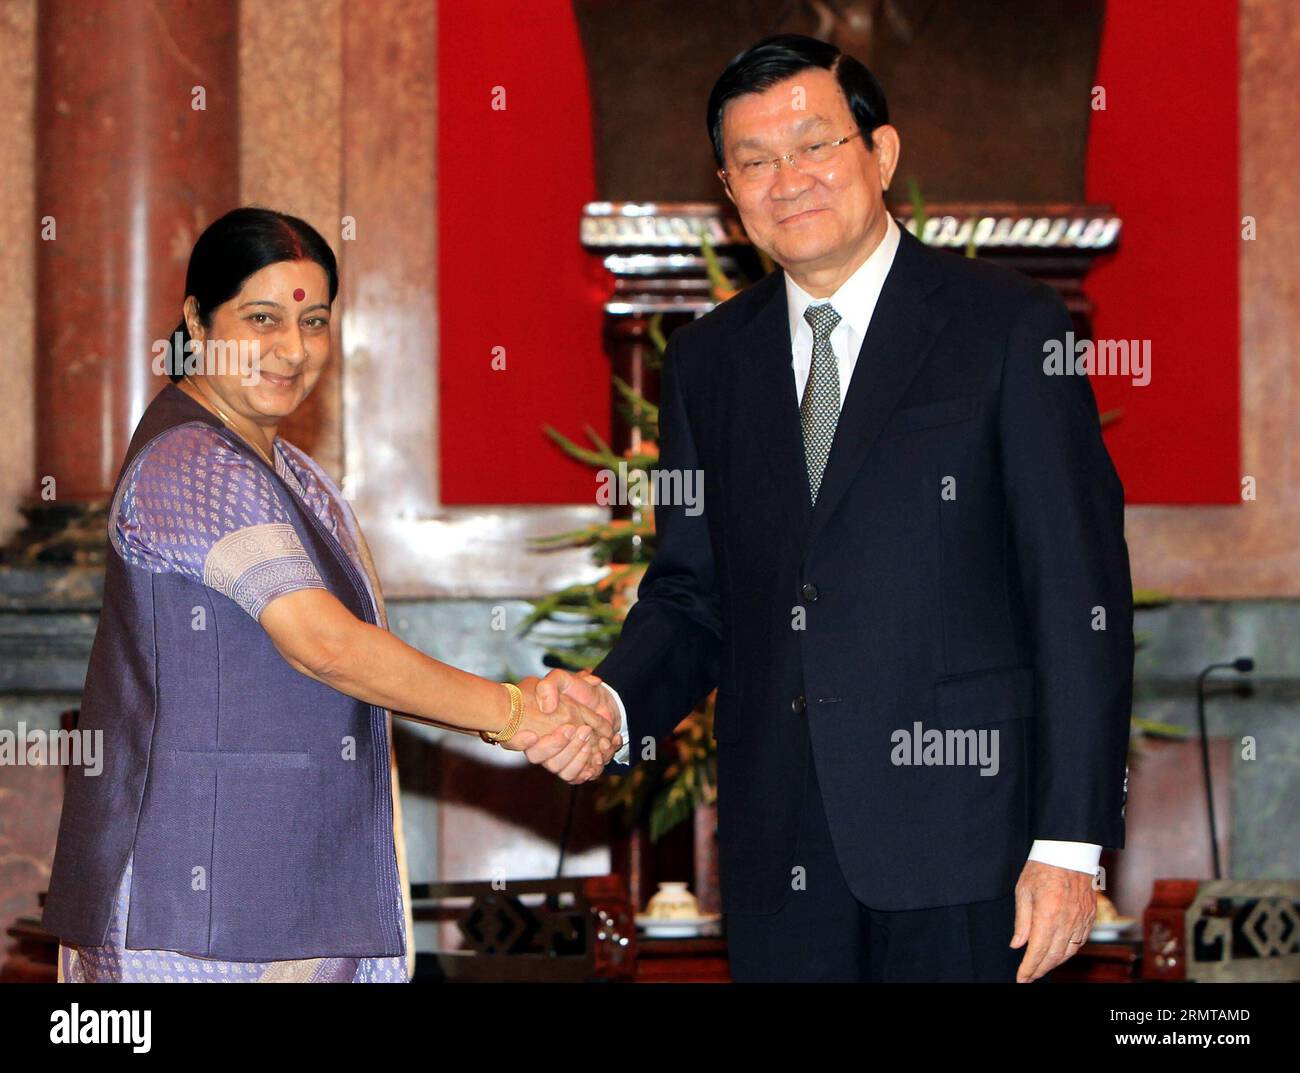 (140825)-- HANOI, 25. August 2014 -- der vietnamesische Präsident Truong Tan Sang (R) schüttelt mit der indischen Außenministerin Sushma Swaraj in Hanoi, der Hauptstadt Vietnams, am 25. August 2014 die Hände. Sushma Swaraj sagte hier am Montag, dass sie von Indien und Vietnam erwarte, dass sie die bilateralen Handels- und Investitionseinnahmen gegenüber dem derzeitigen Niveau verdoppeln oder verdreifachen. ) VIETNAM-HANOI-INDIEN-TREFFEN VNA PUBLICATIONxNOTxINxCHN Hanoi August 25 2014 der vietnamesische Präsident Truong TAN sang r shakes hands with Indian Ministers of External Affairs Sushma Swaraj in Hanoi Capital of Vietnam August 25 2014 sagte Sushma Swaraj hier AUF Monda Stockfoto